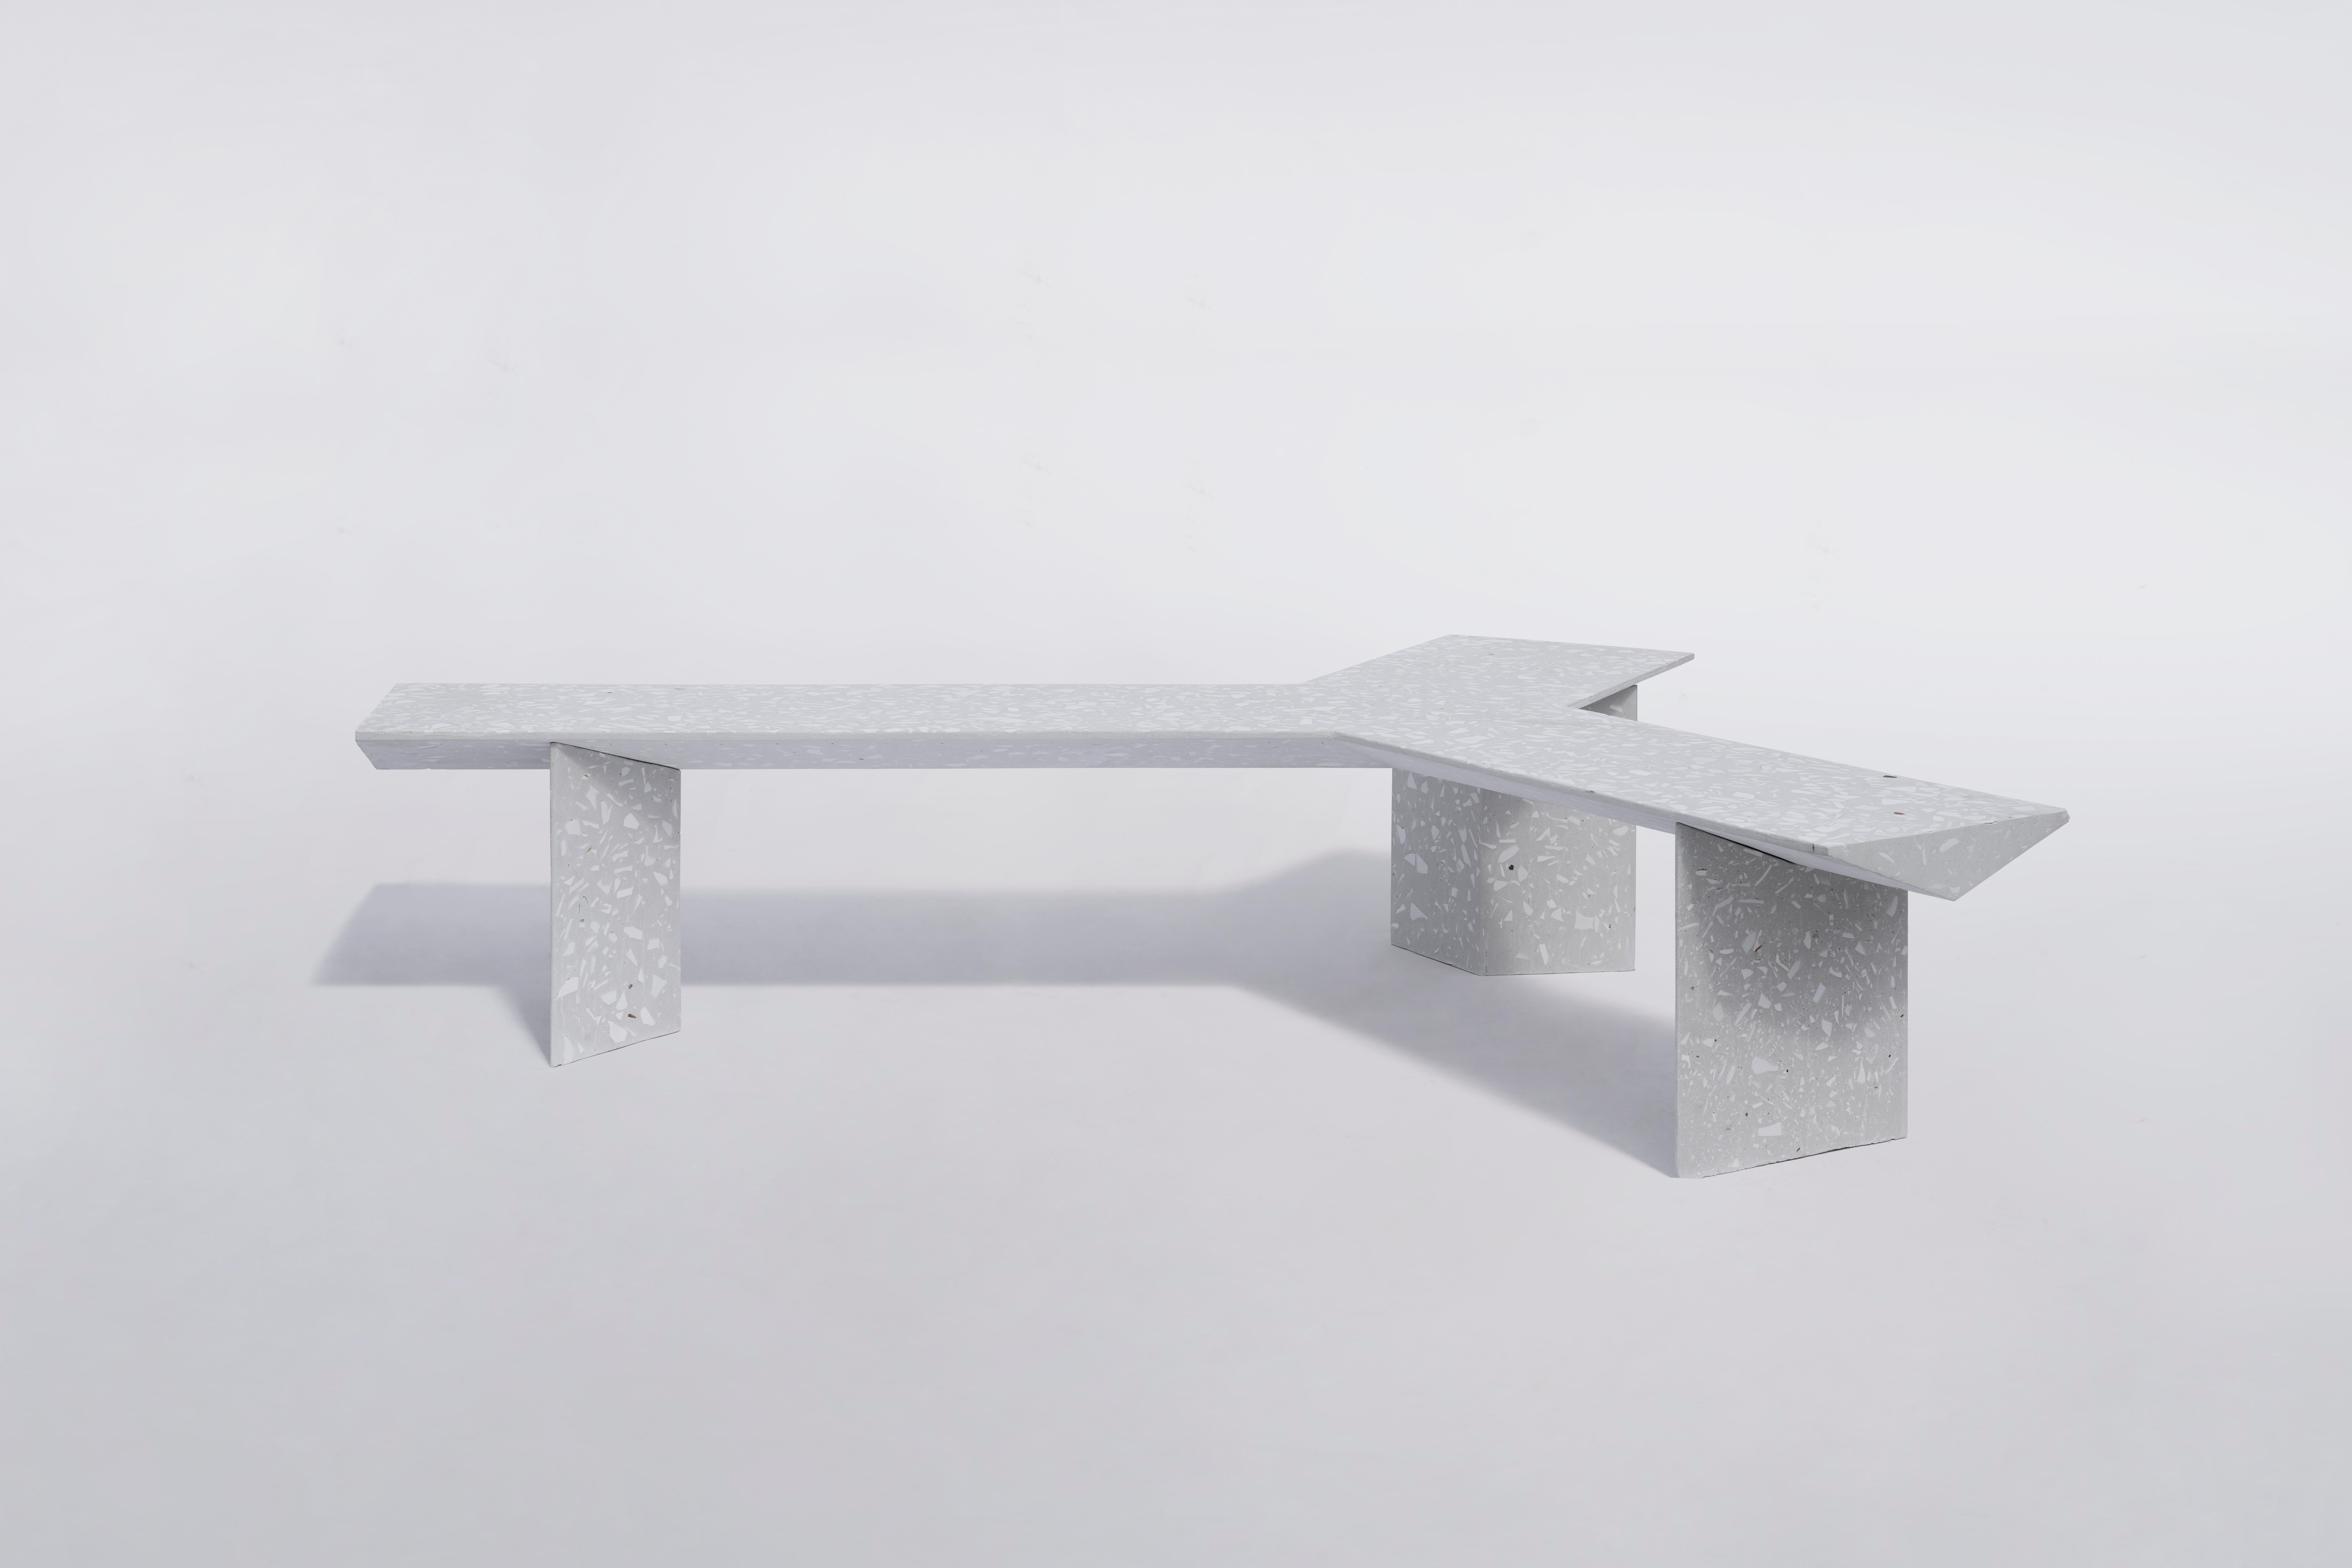 Banc LIANG 2 par Bentu Design

Déchets de béton et de céramique / Terrazzo
2045×1700×445 mm 
206 kg
Utilisation en extérieur : OK

Banc modulaire : assemblez LIANG 1 et LIANG 2 pour créer un banc sculptural.

--
Bentu Desing est un studio